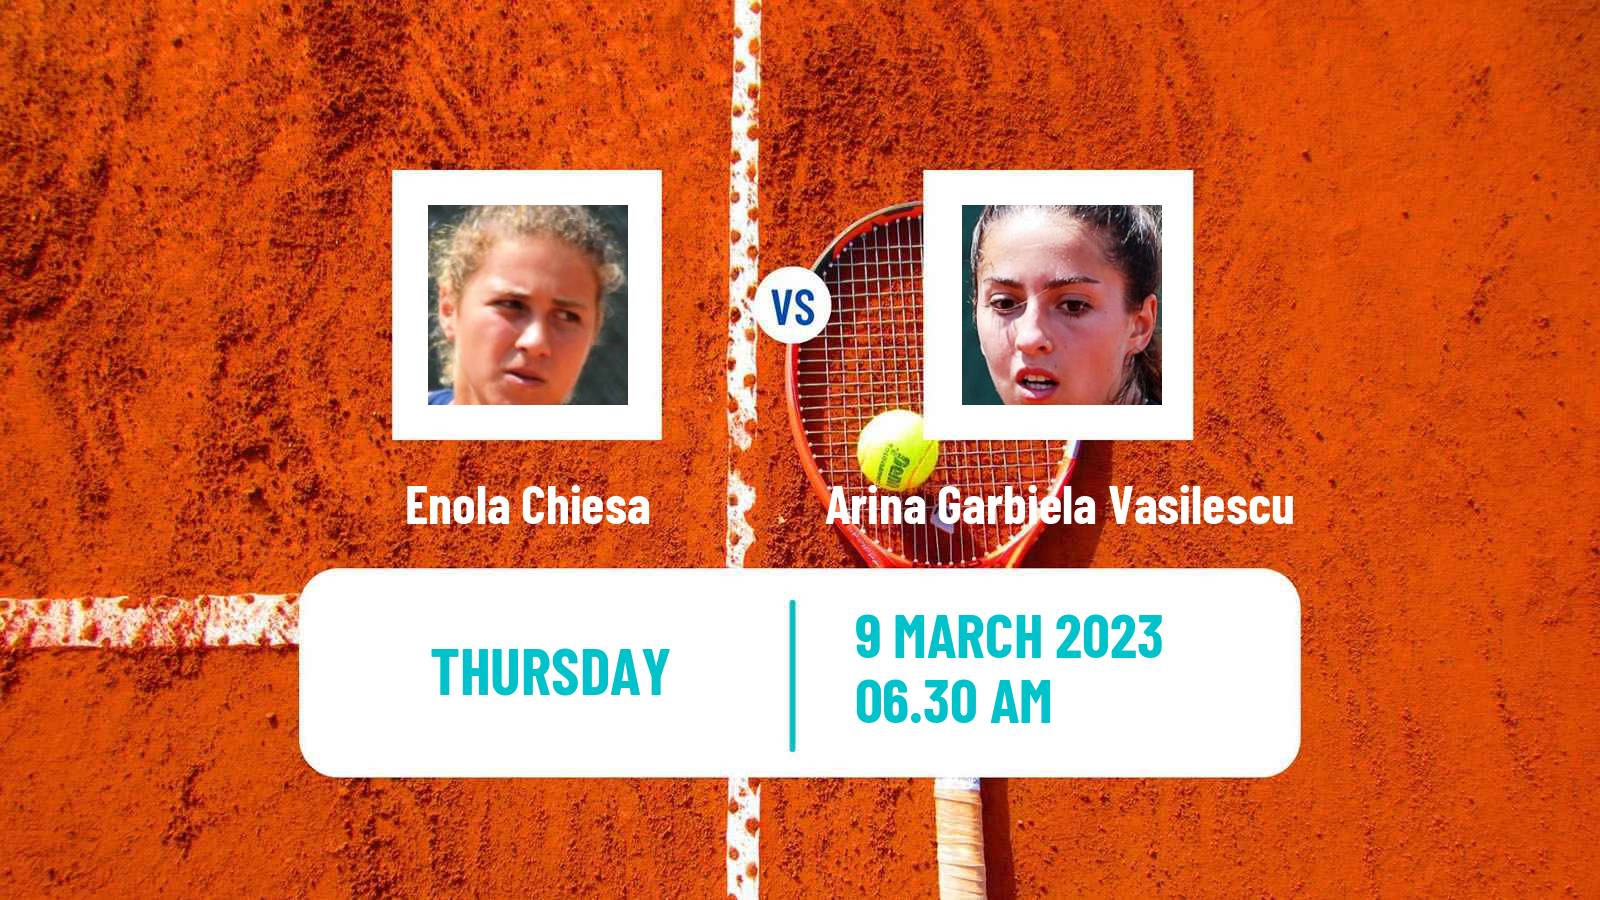 Tennis ITF Tournaments Enola Chiesa - Arina Garbiela Vasilescu